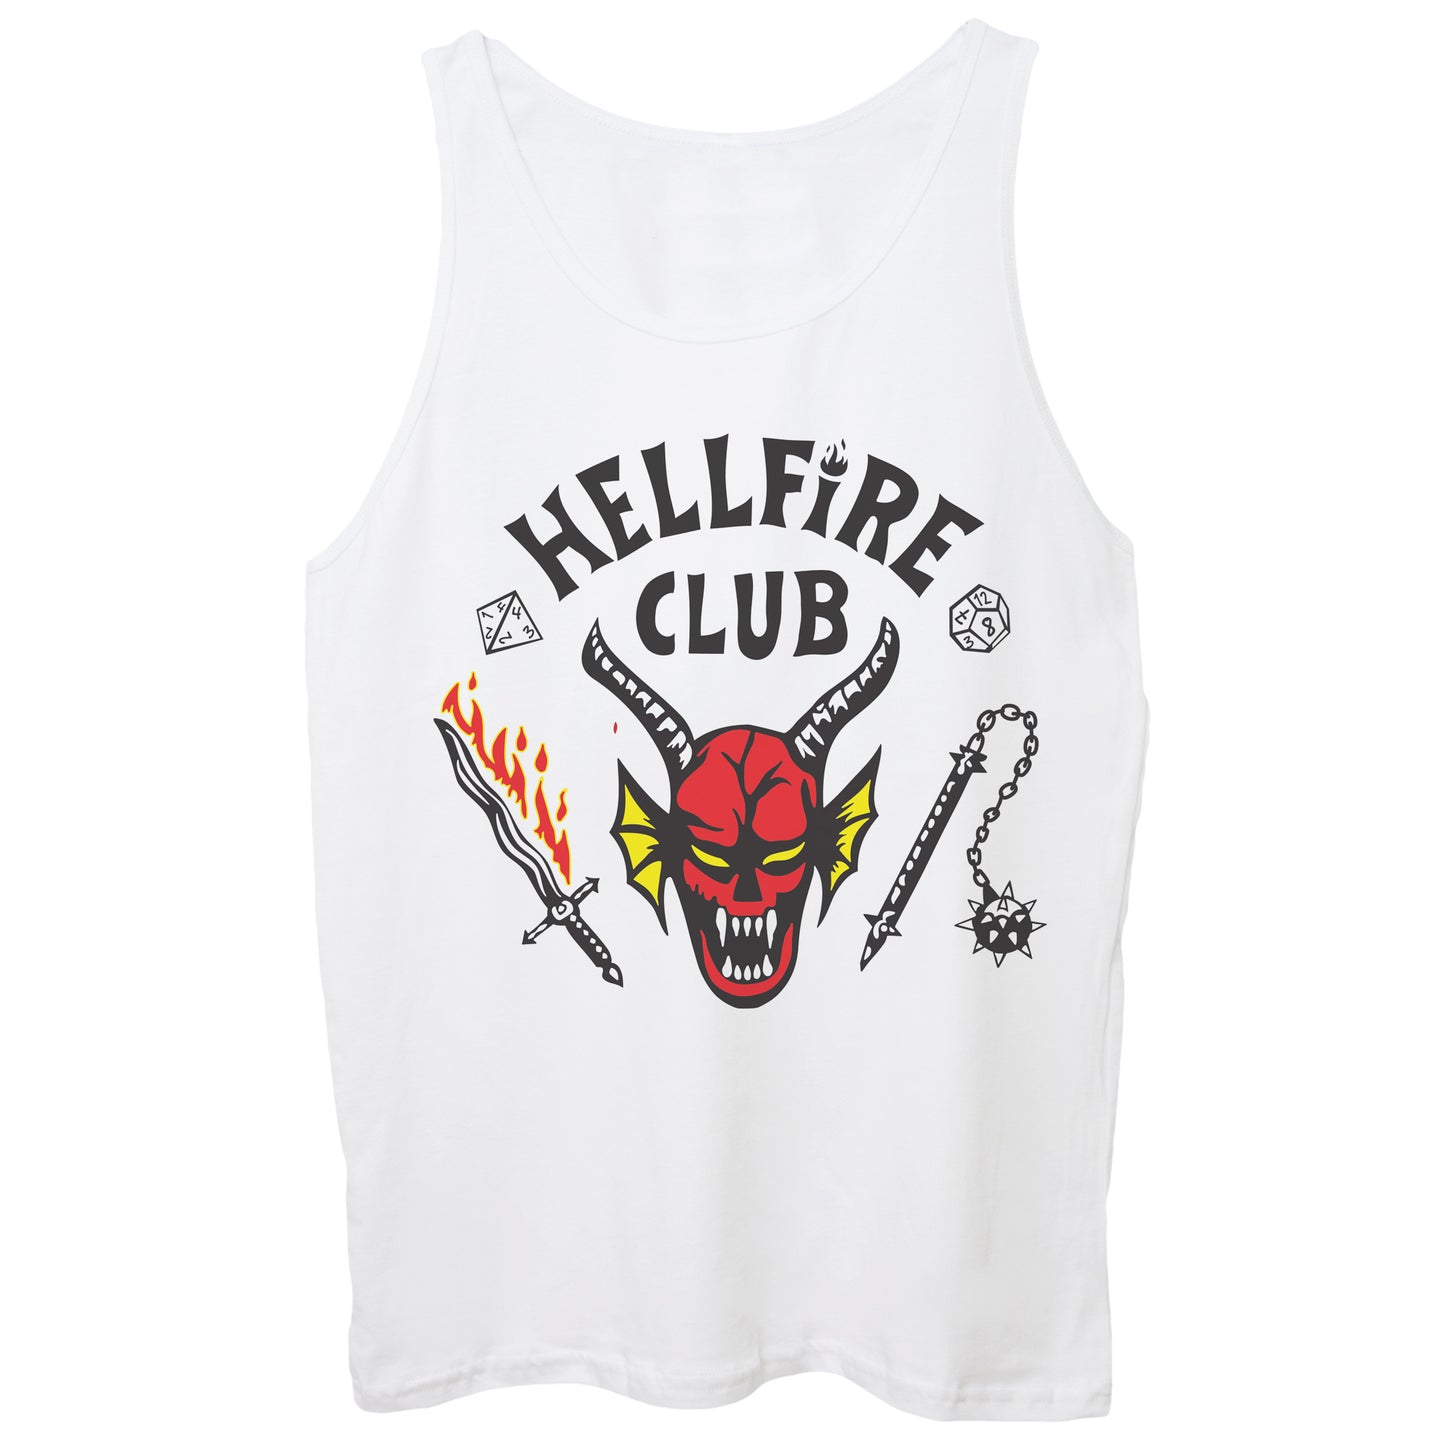 CUC- HellFire Club - Stranger - ChooseUrColor - CUC chooseurcolor